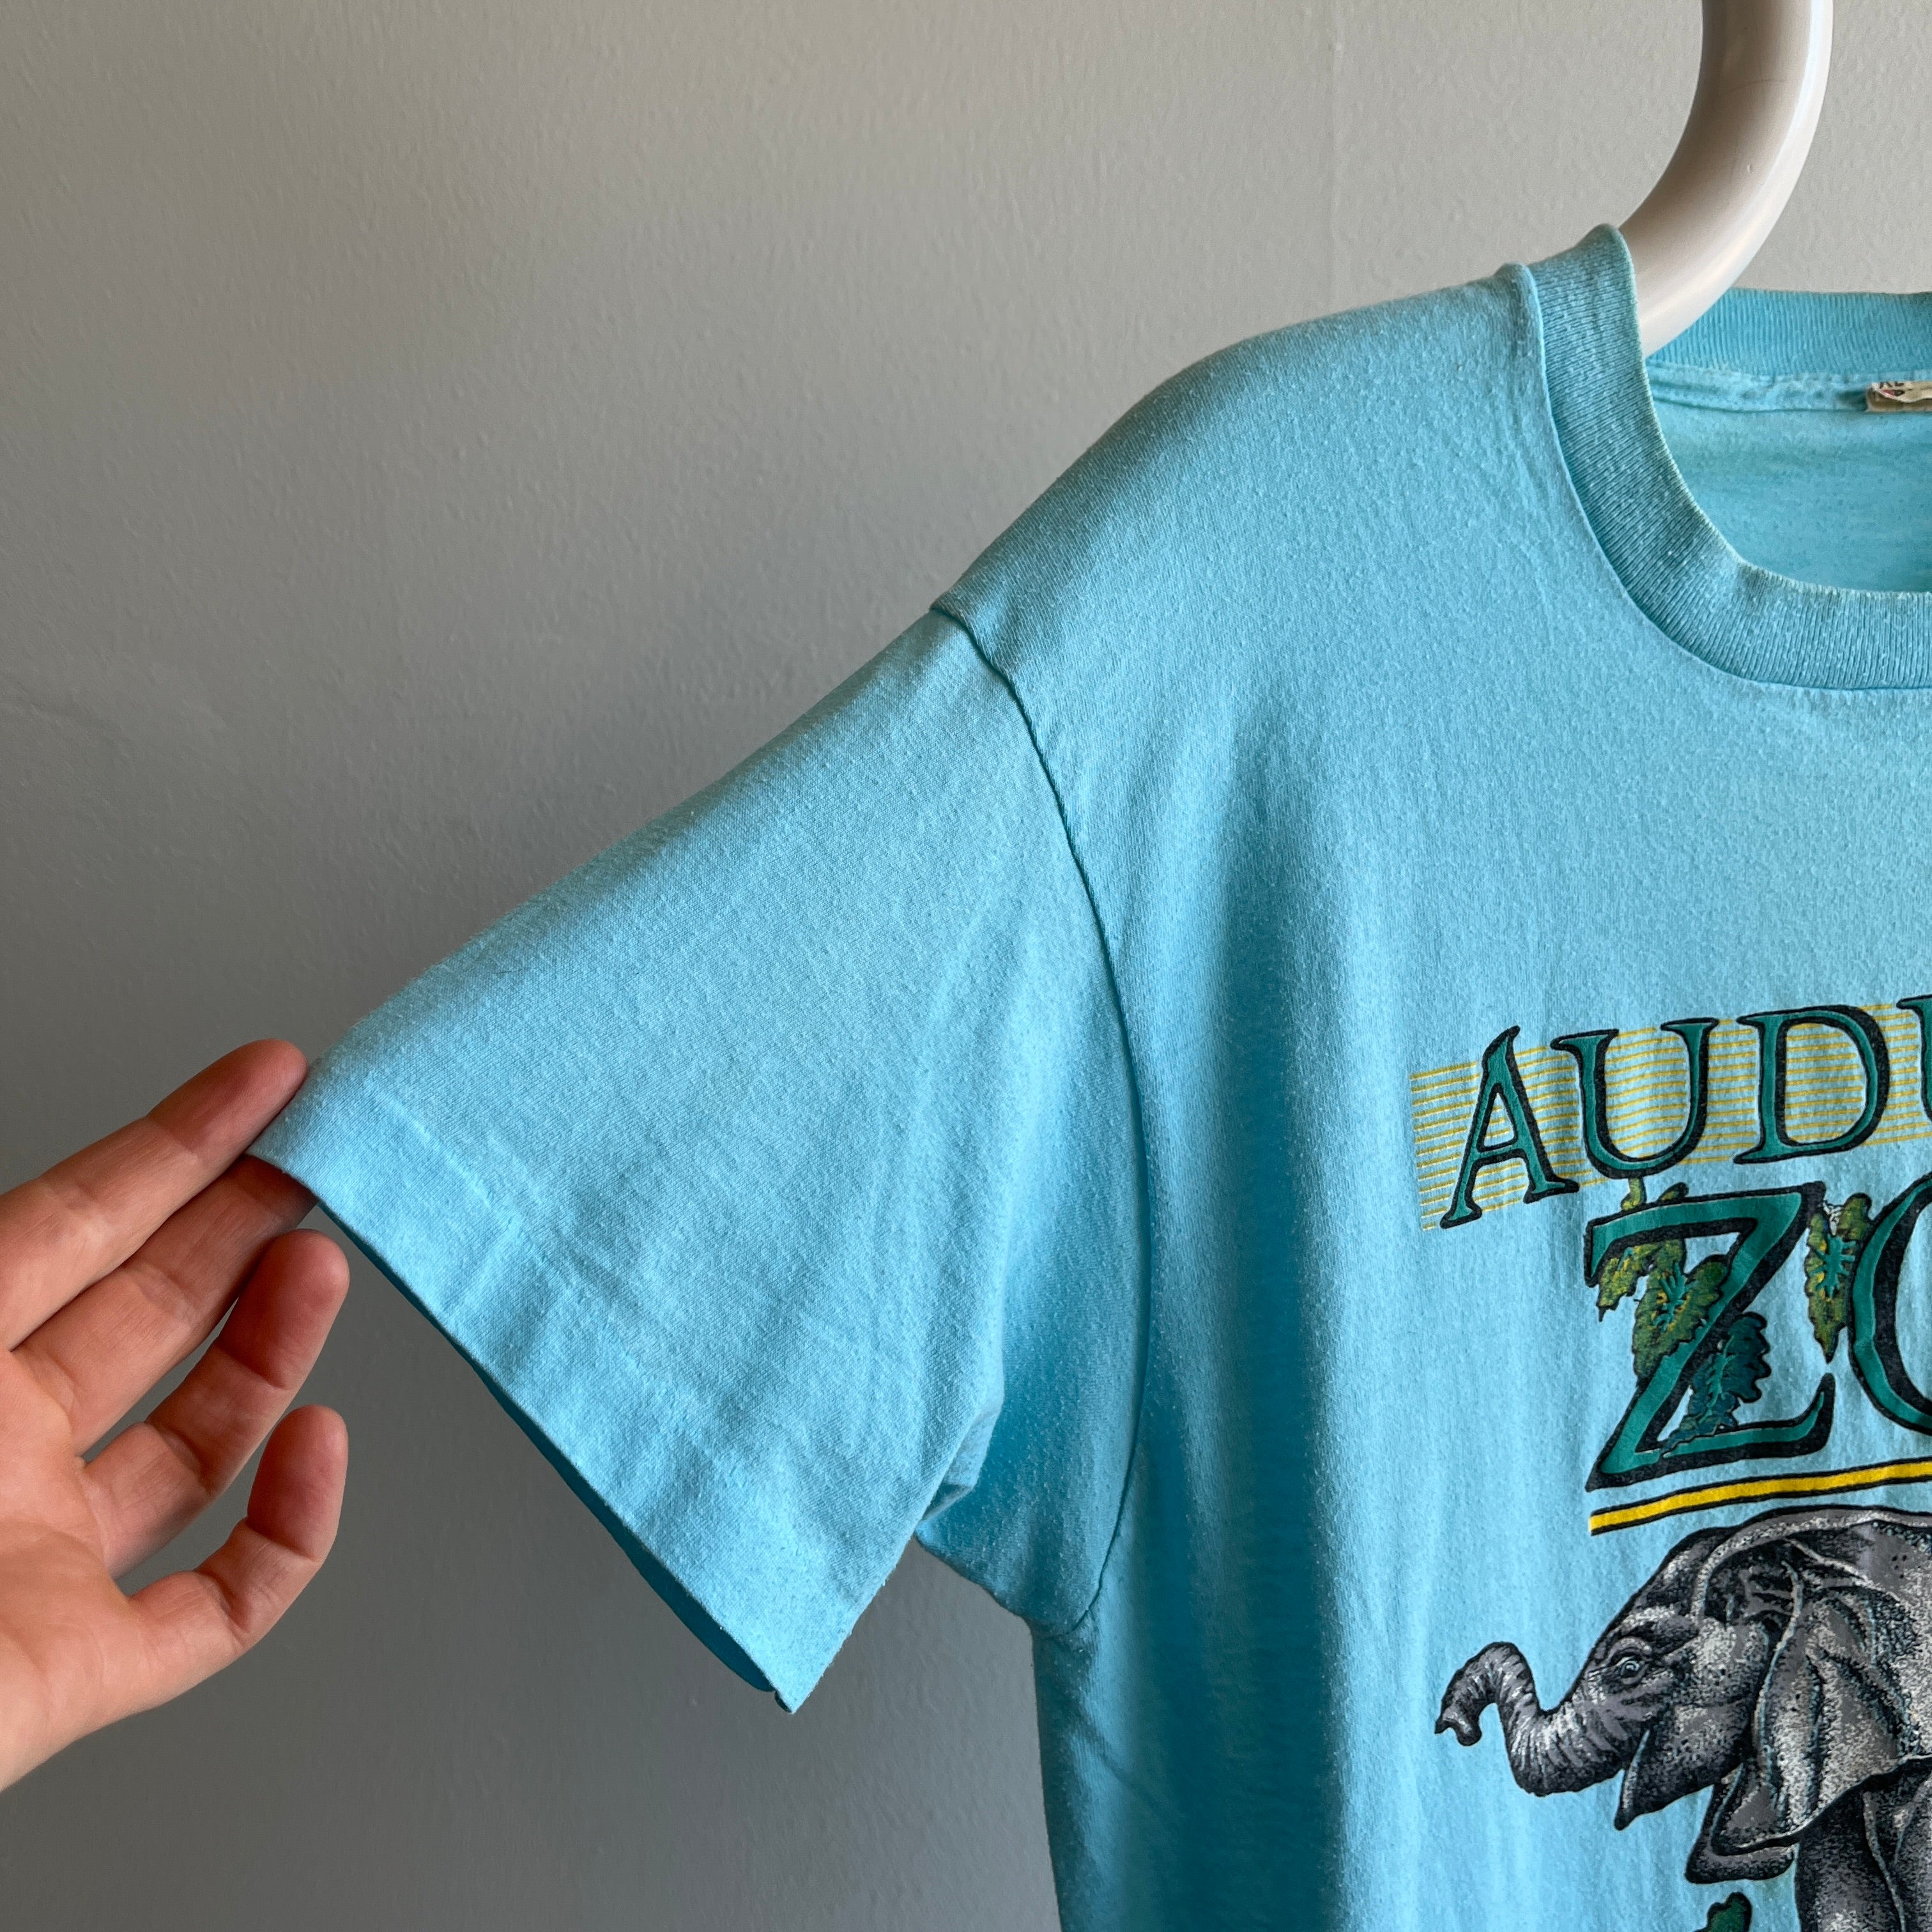 1988 Audubon Zoo New Orleans T-shirt graphique par Screen Stars